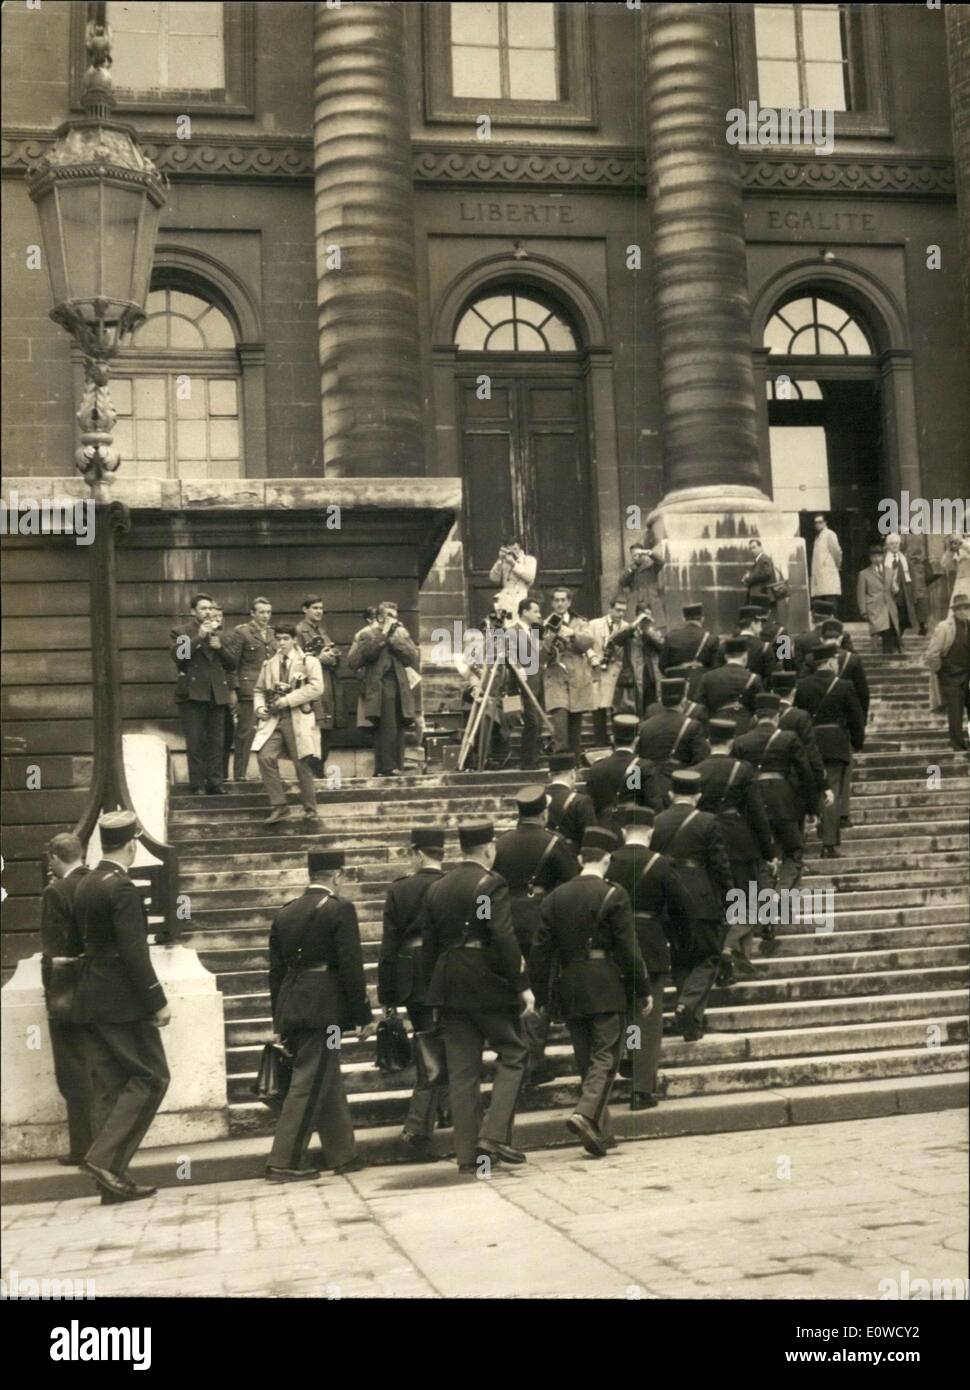 15 mai 1962 - contingent de police au Palais de Justice pour l'extérieur Banque D'Images